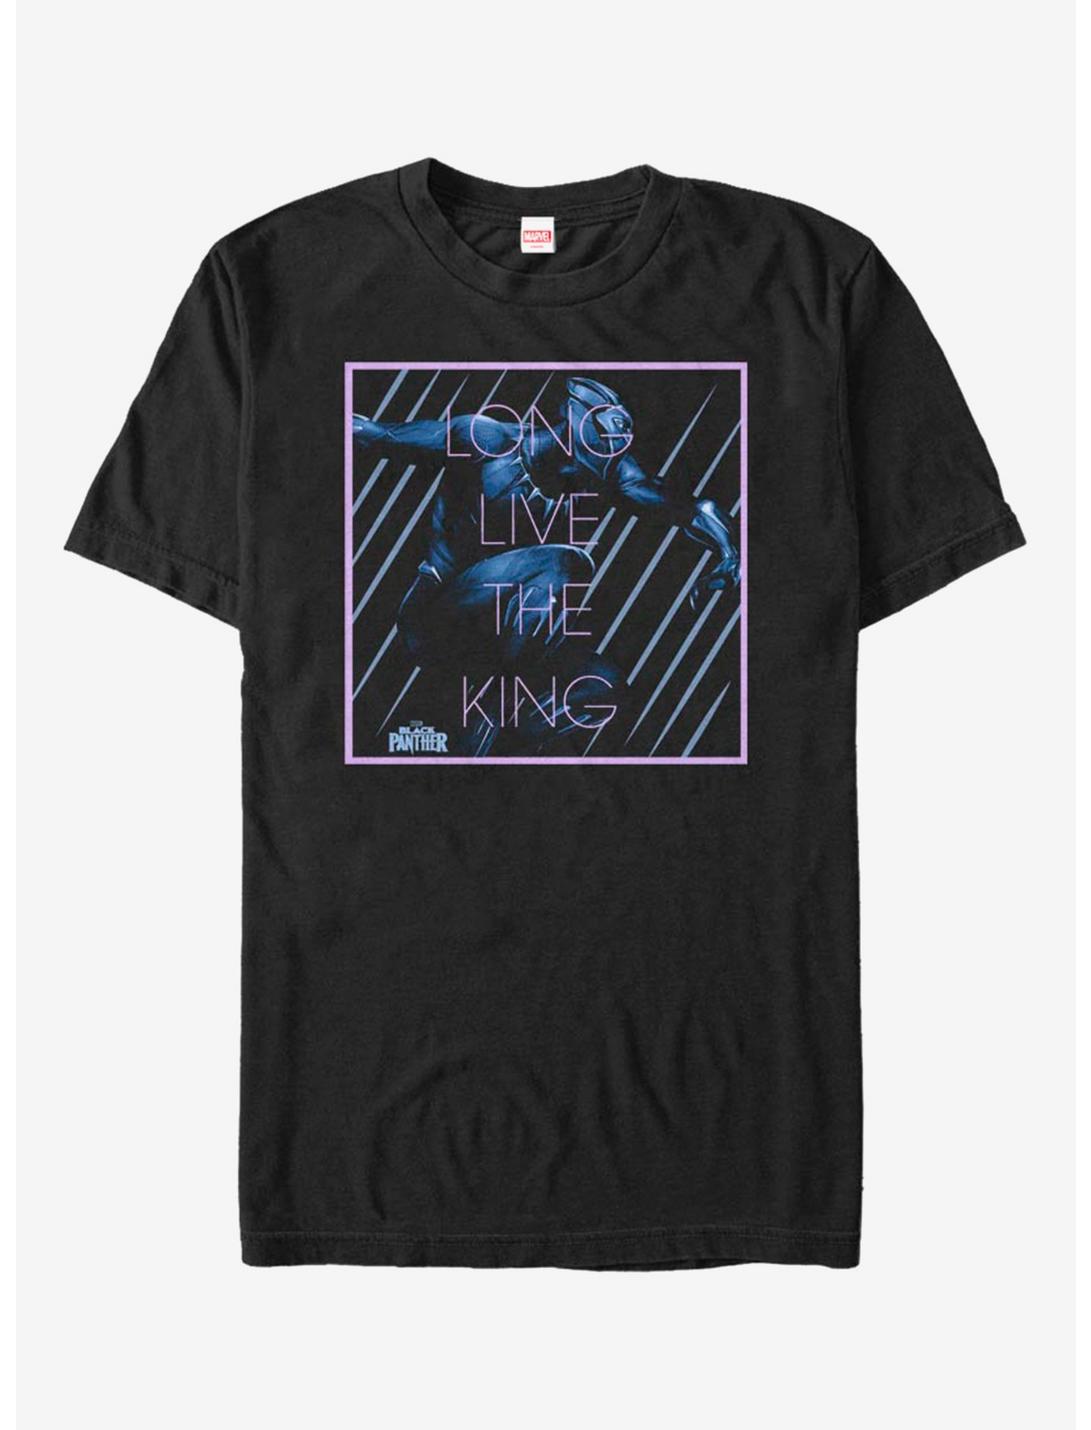 Marvel Black Panther Long Live King T-Shirt, BLACK, hi-res